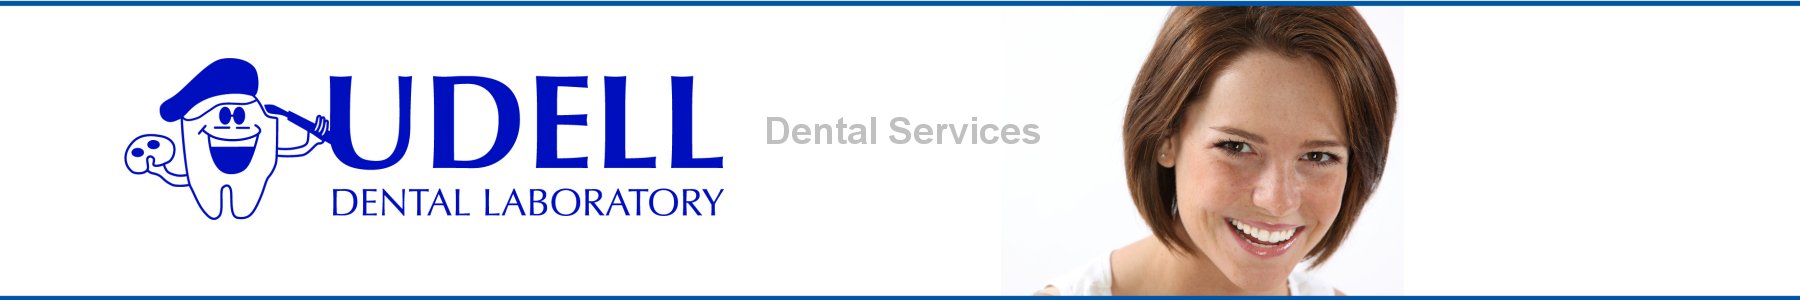 Udell Dental Laboratory  Digital Dental Services